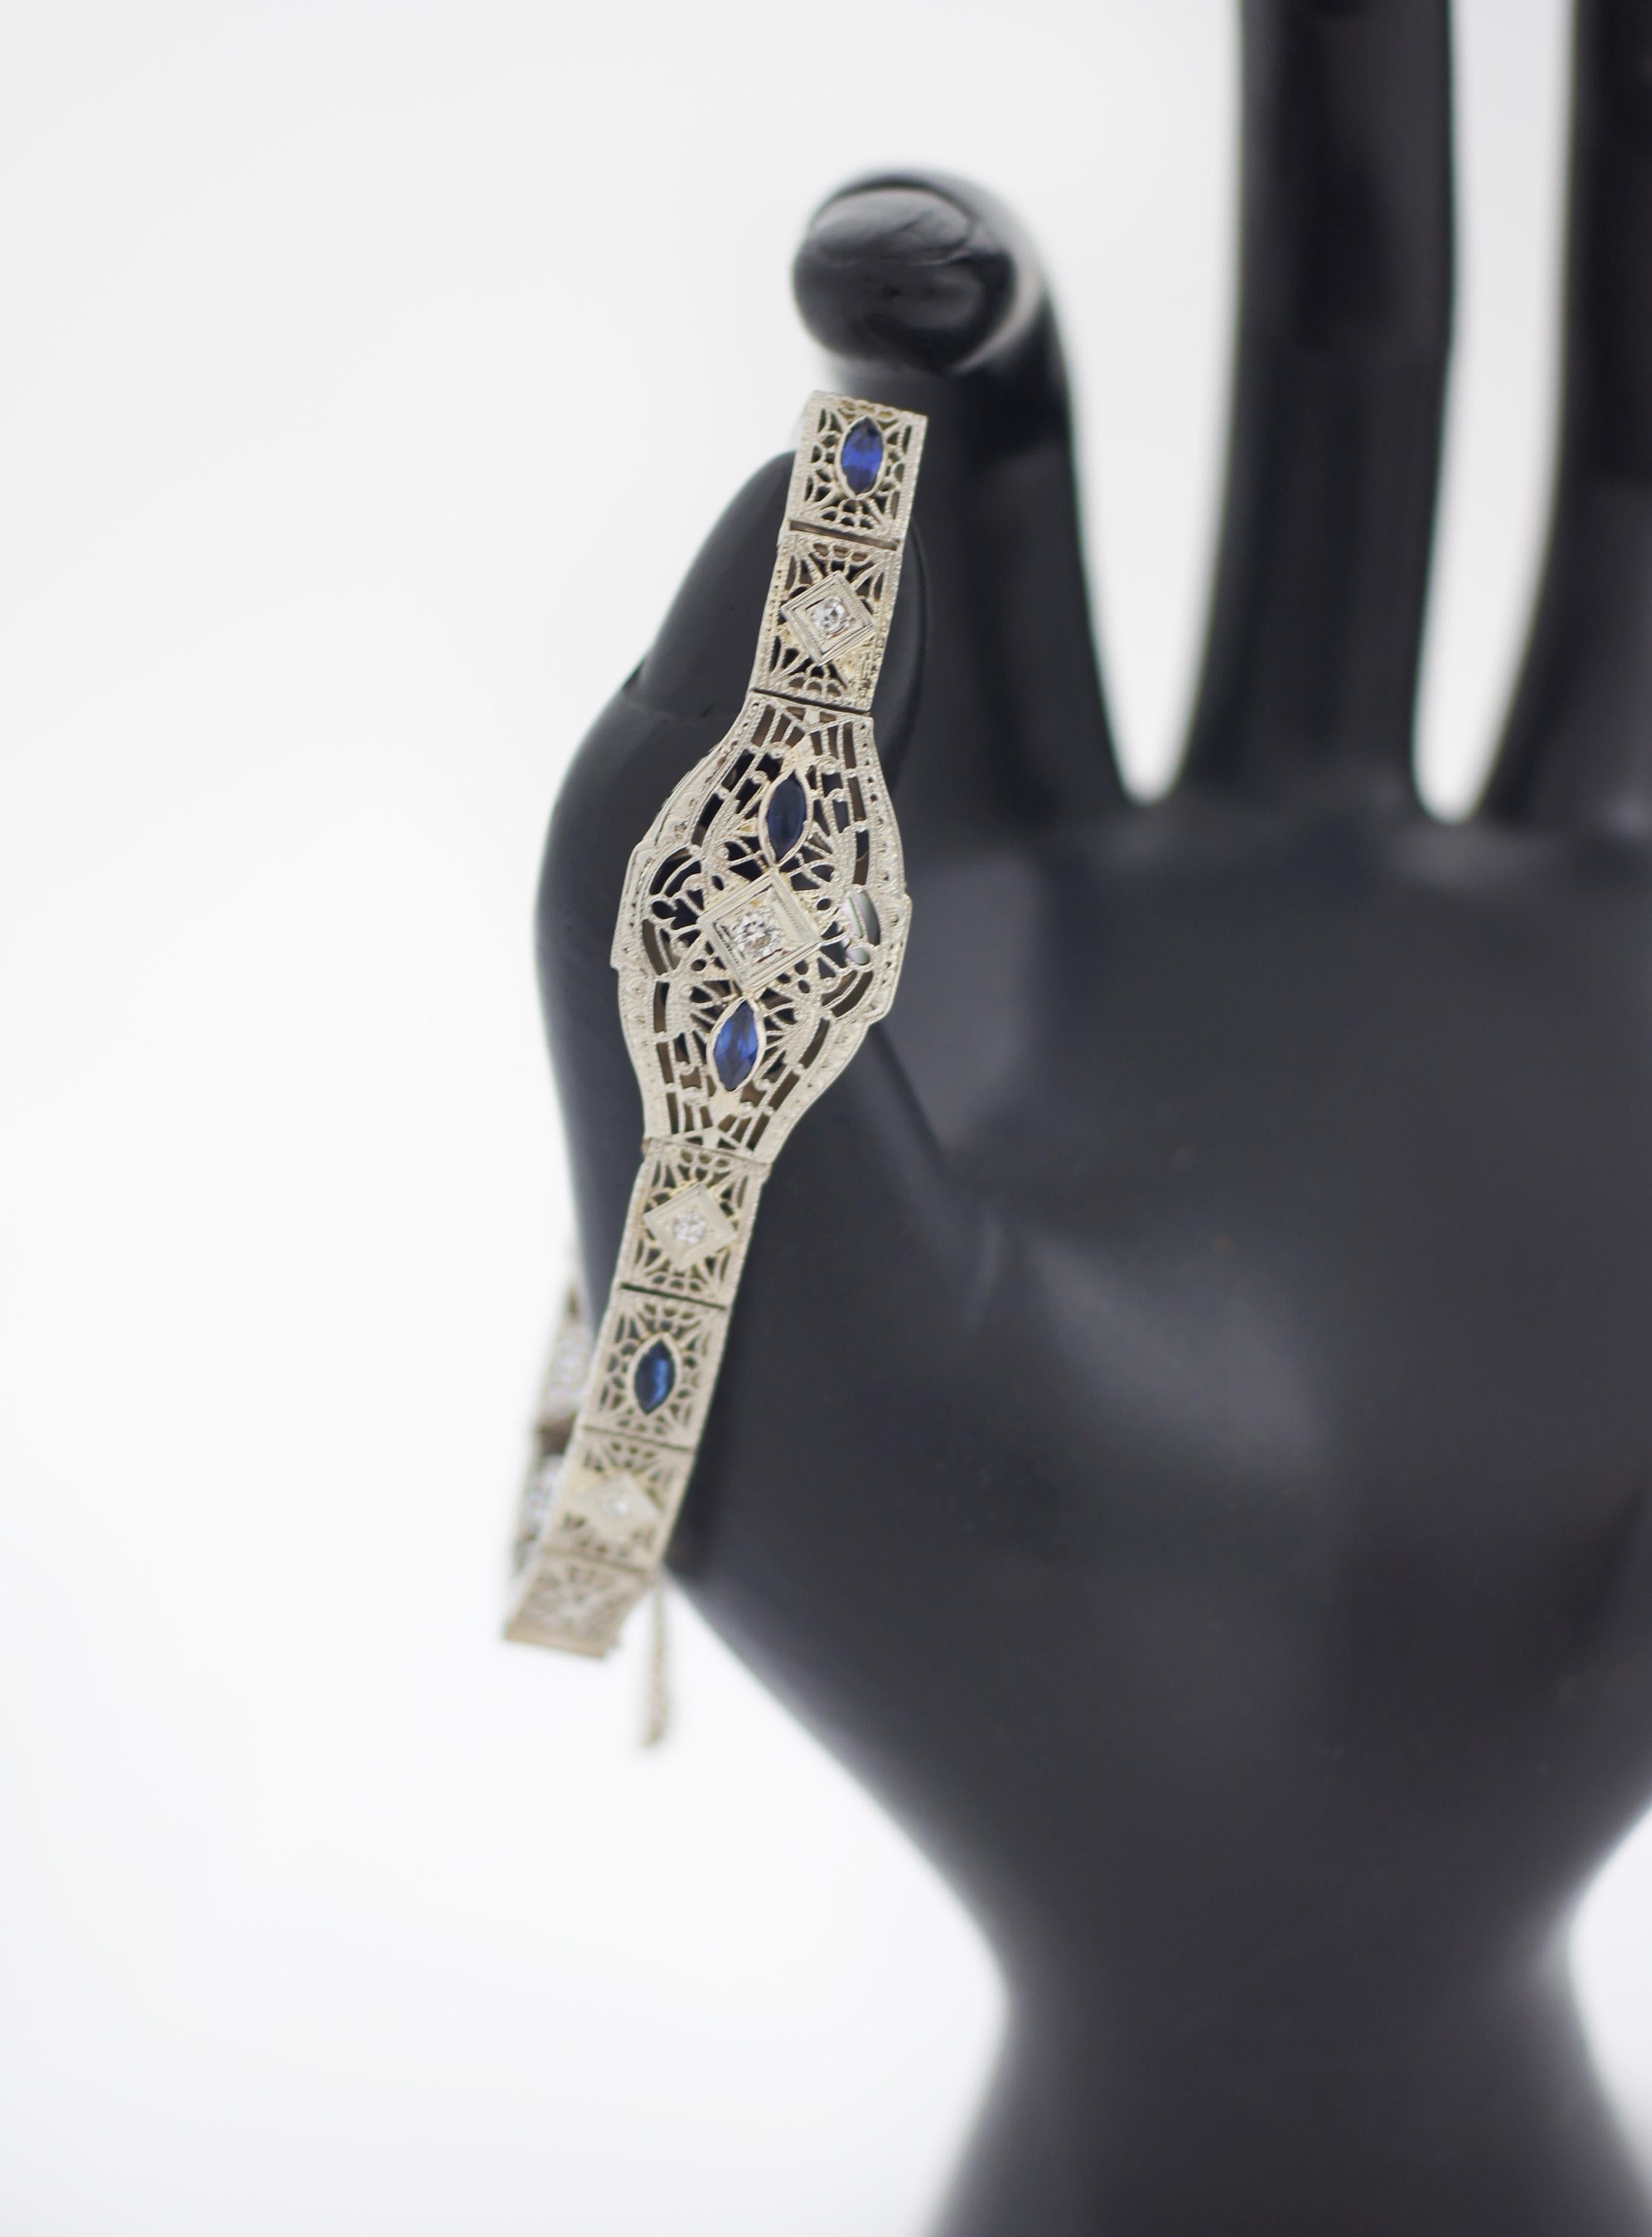 Art Deco
14K Weißgold
Diamanten & Saphire
Filigran-Armband
Ungefähr 1930er Jahre
Punzierungen: 14K
Länge des Armbands: 6,5